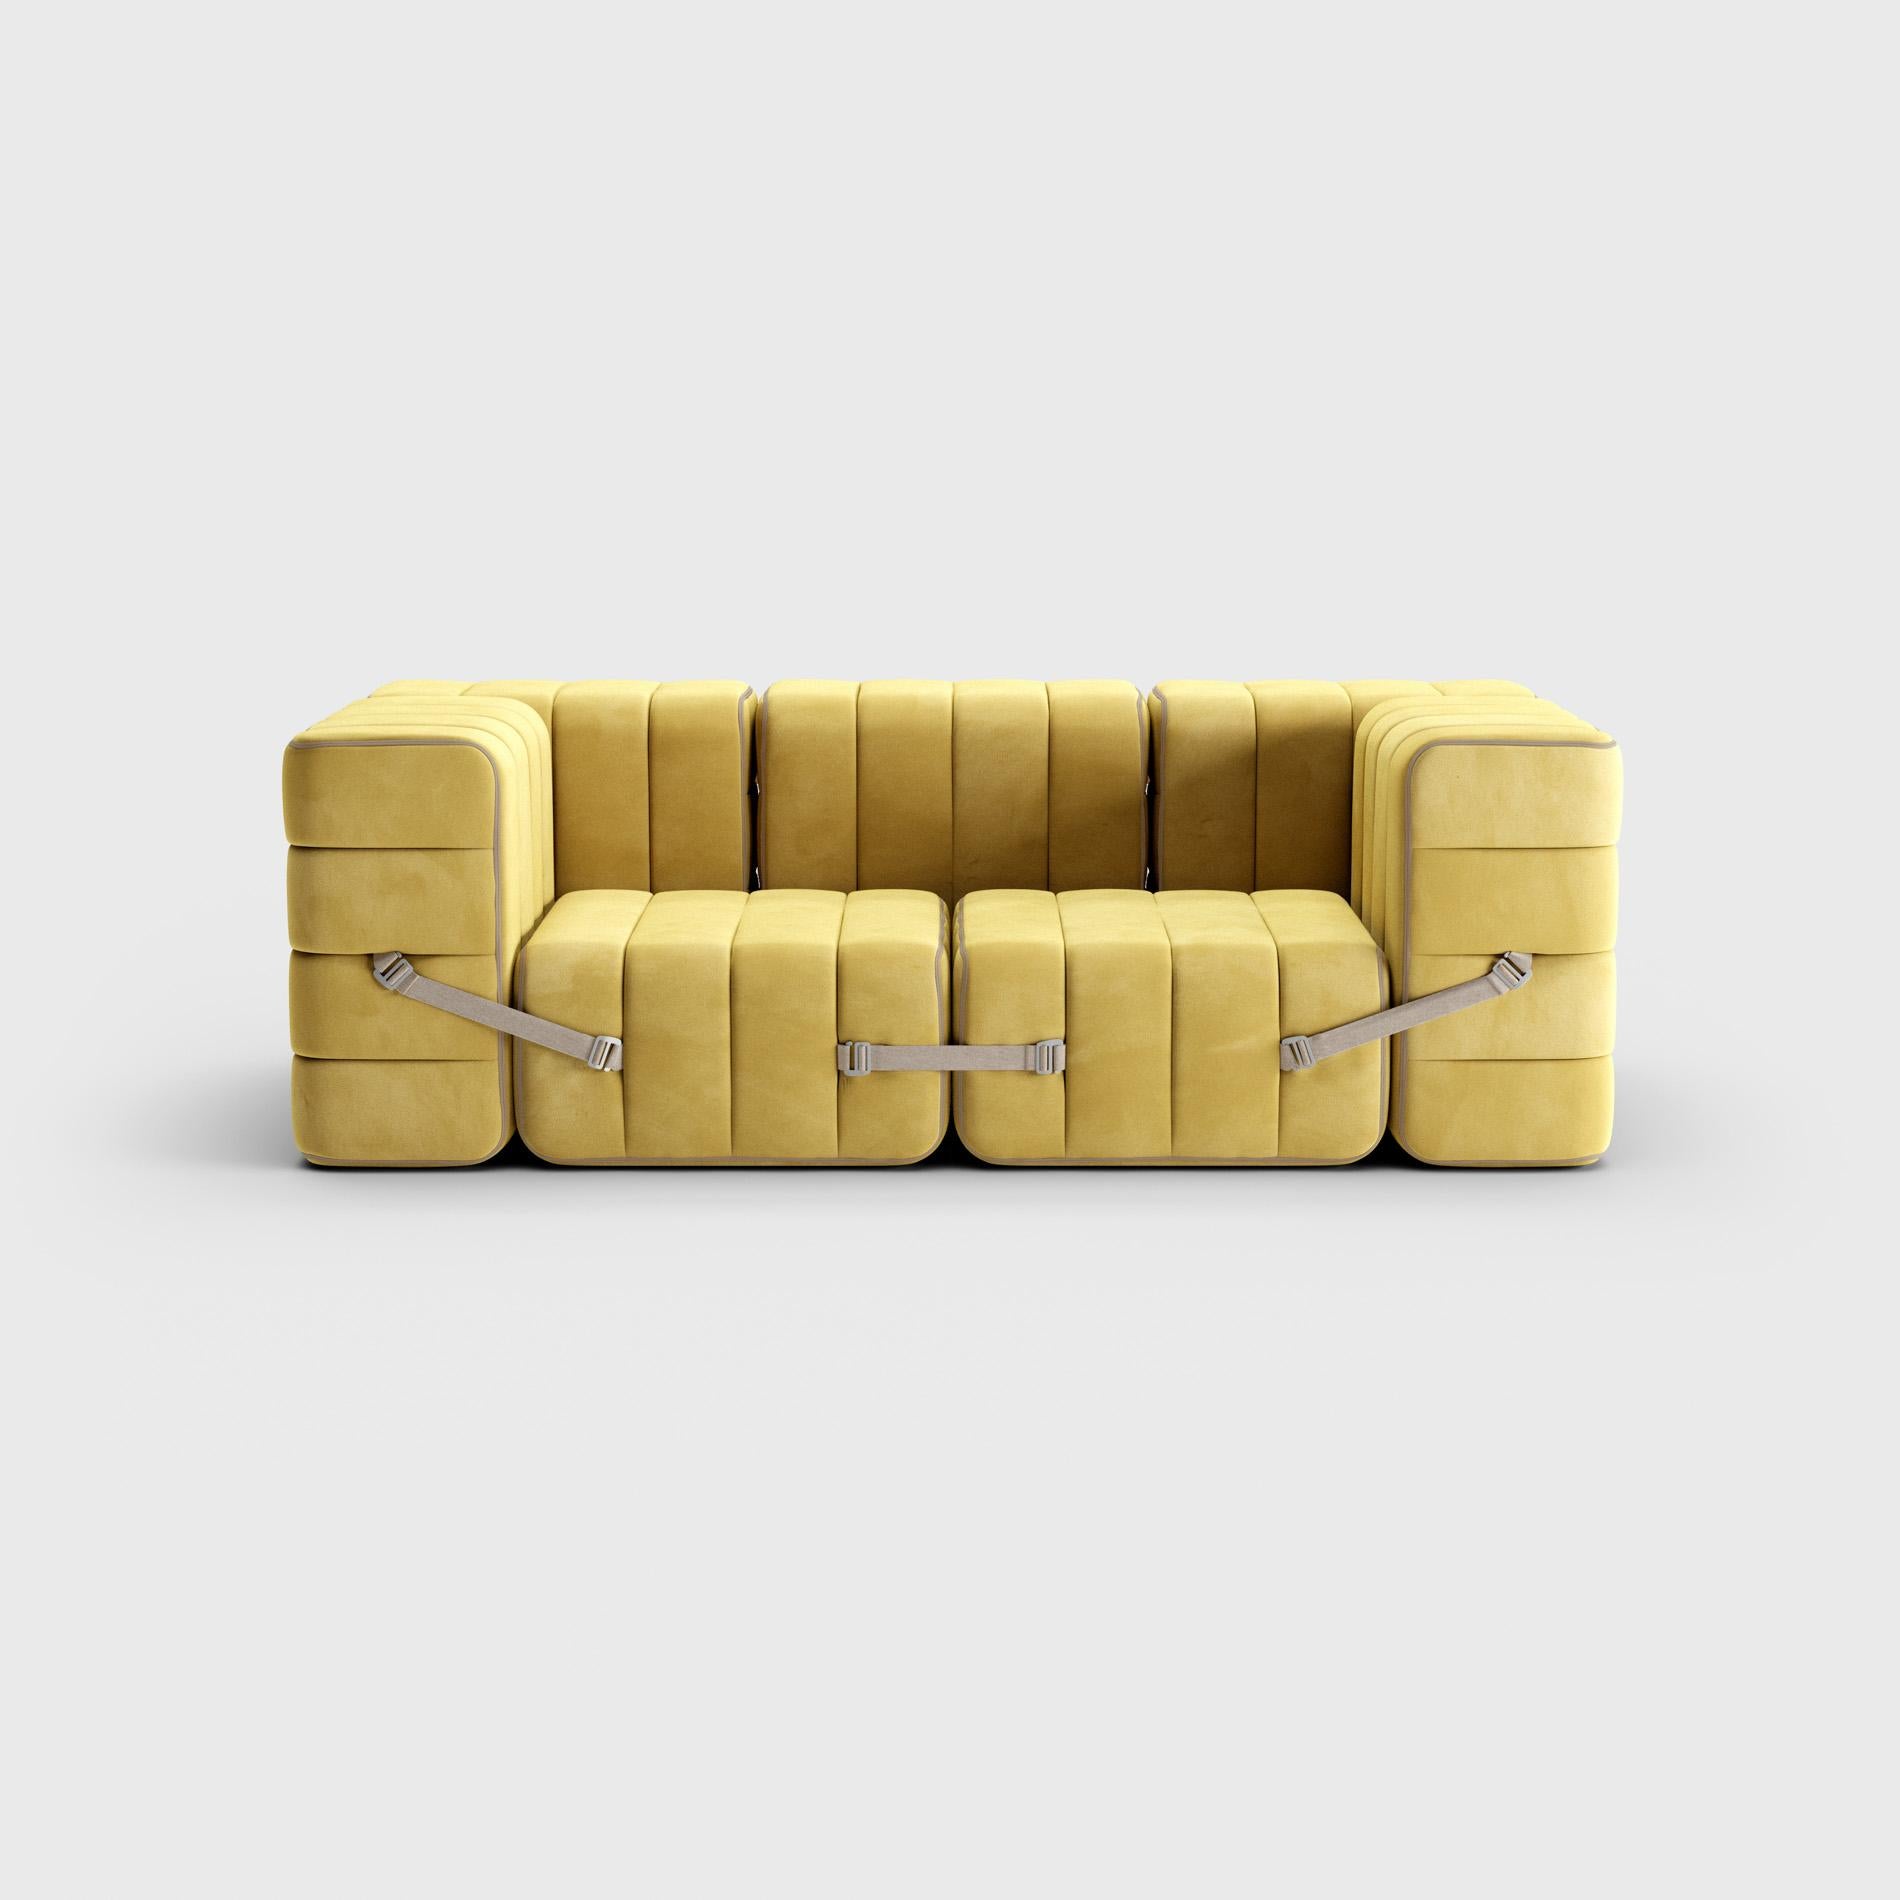 Hand-Crafted Curt Single Module – Fabric Barcelona 'Cornhusk' – Curt Modular Sofa System For Sale